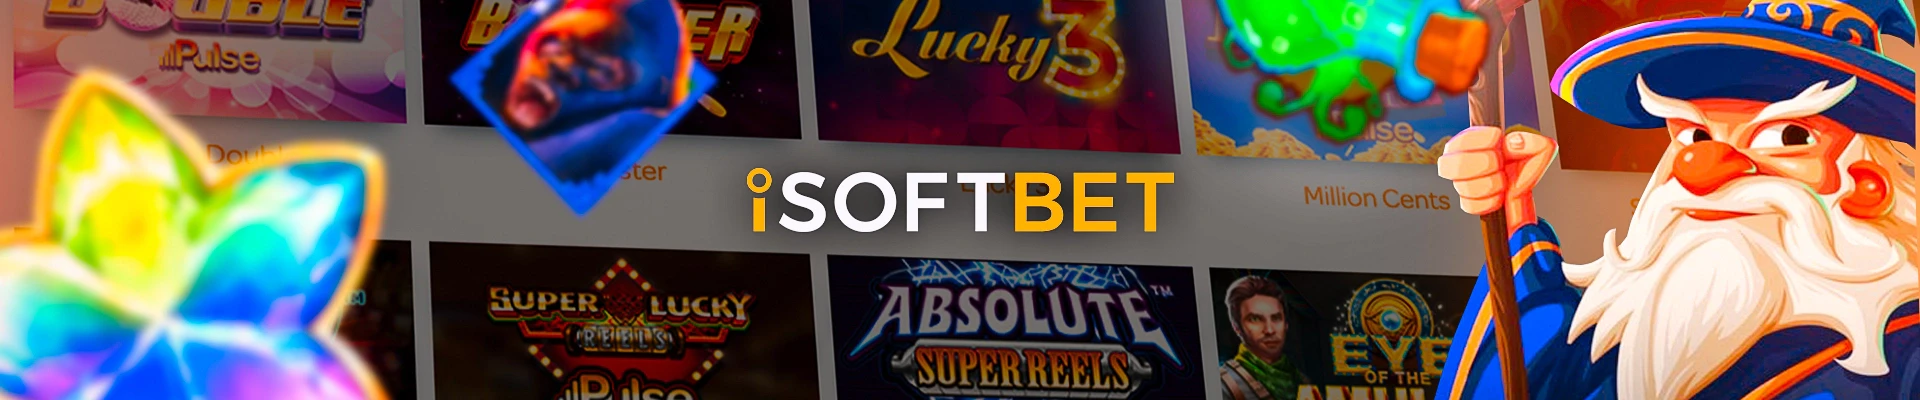 focus isoftbet provider casino